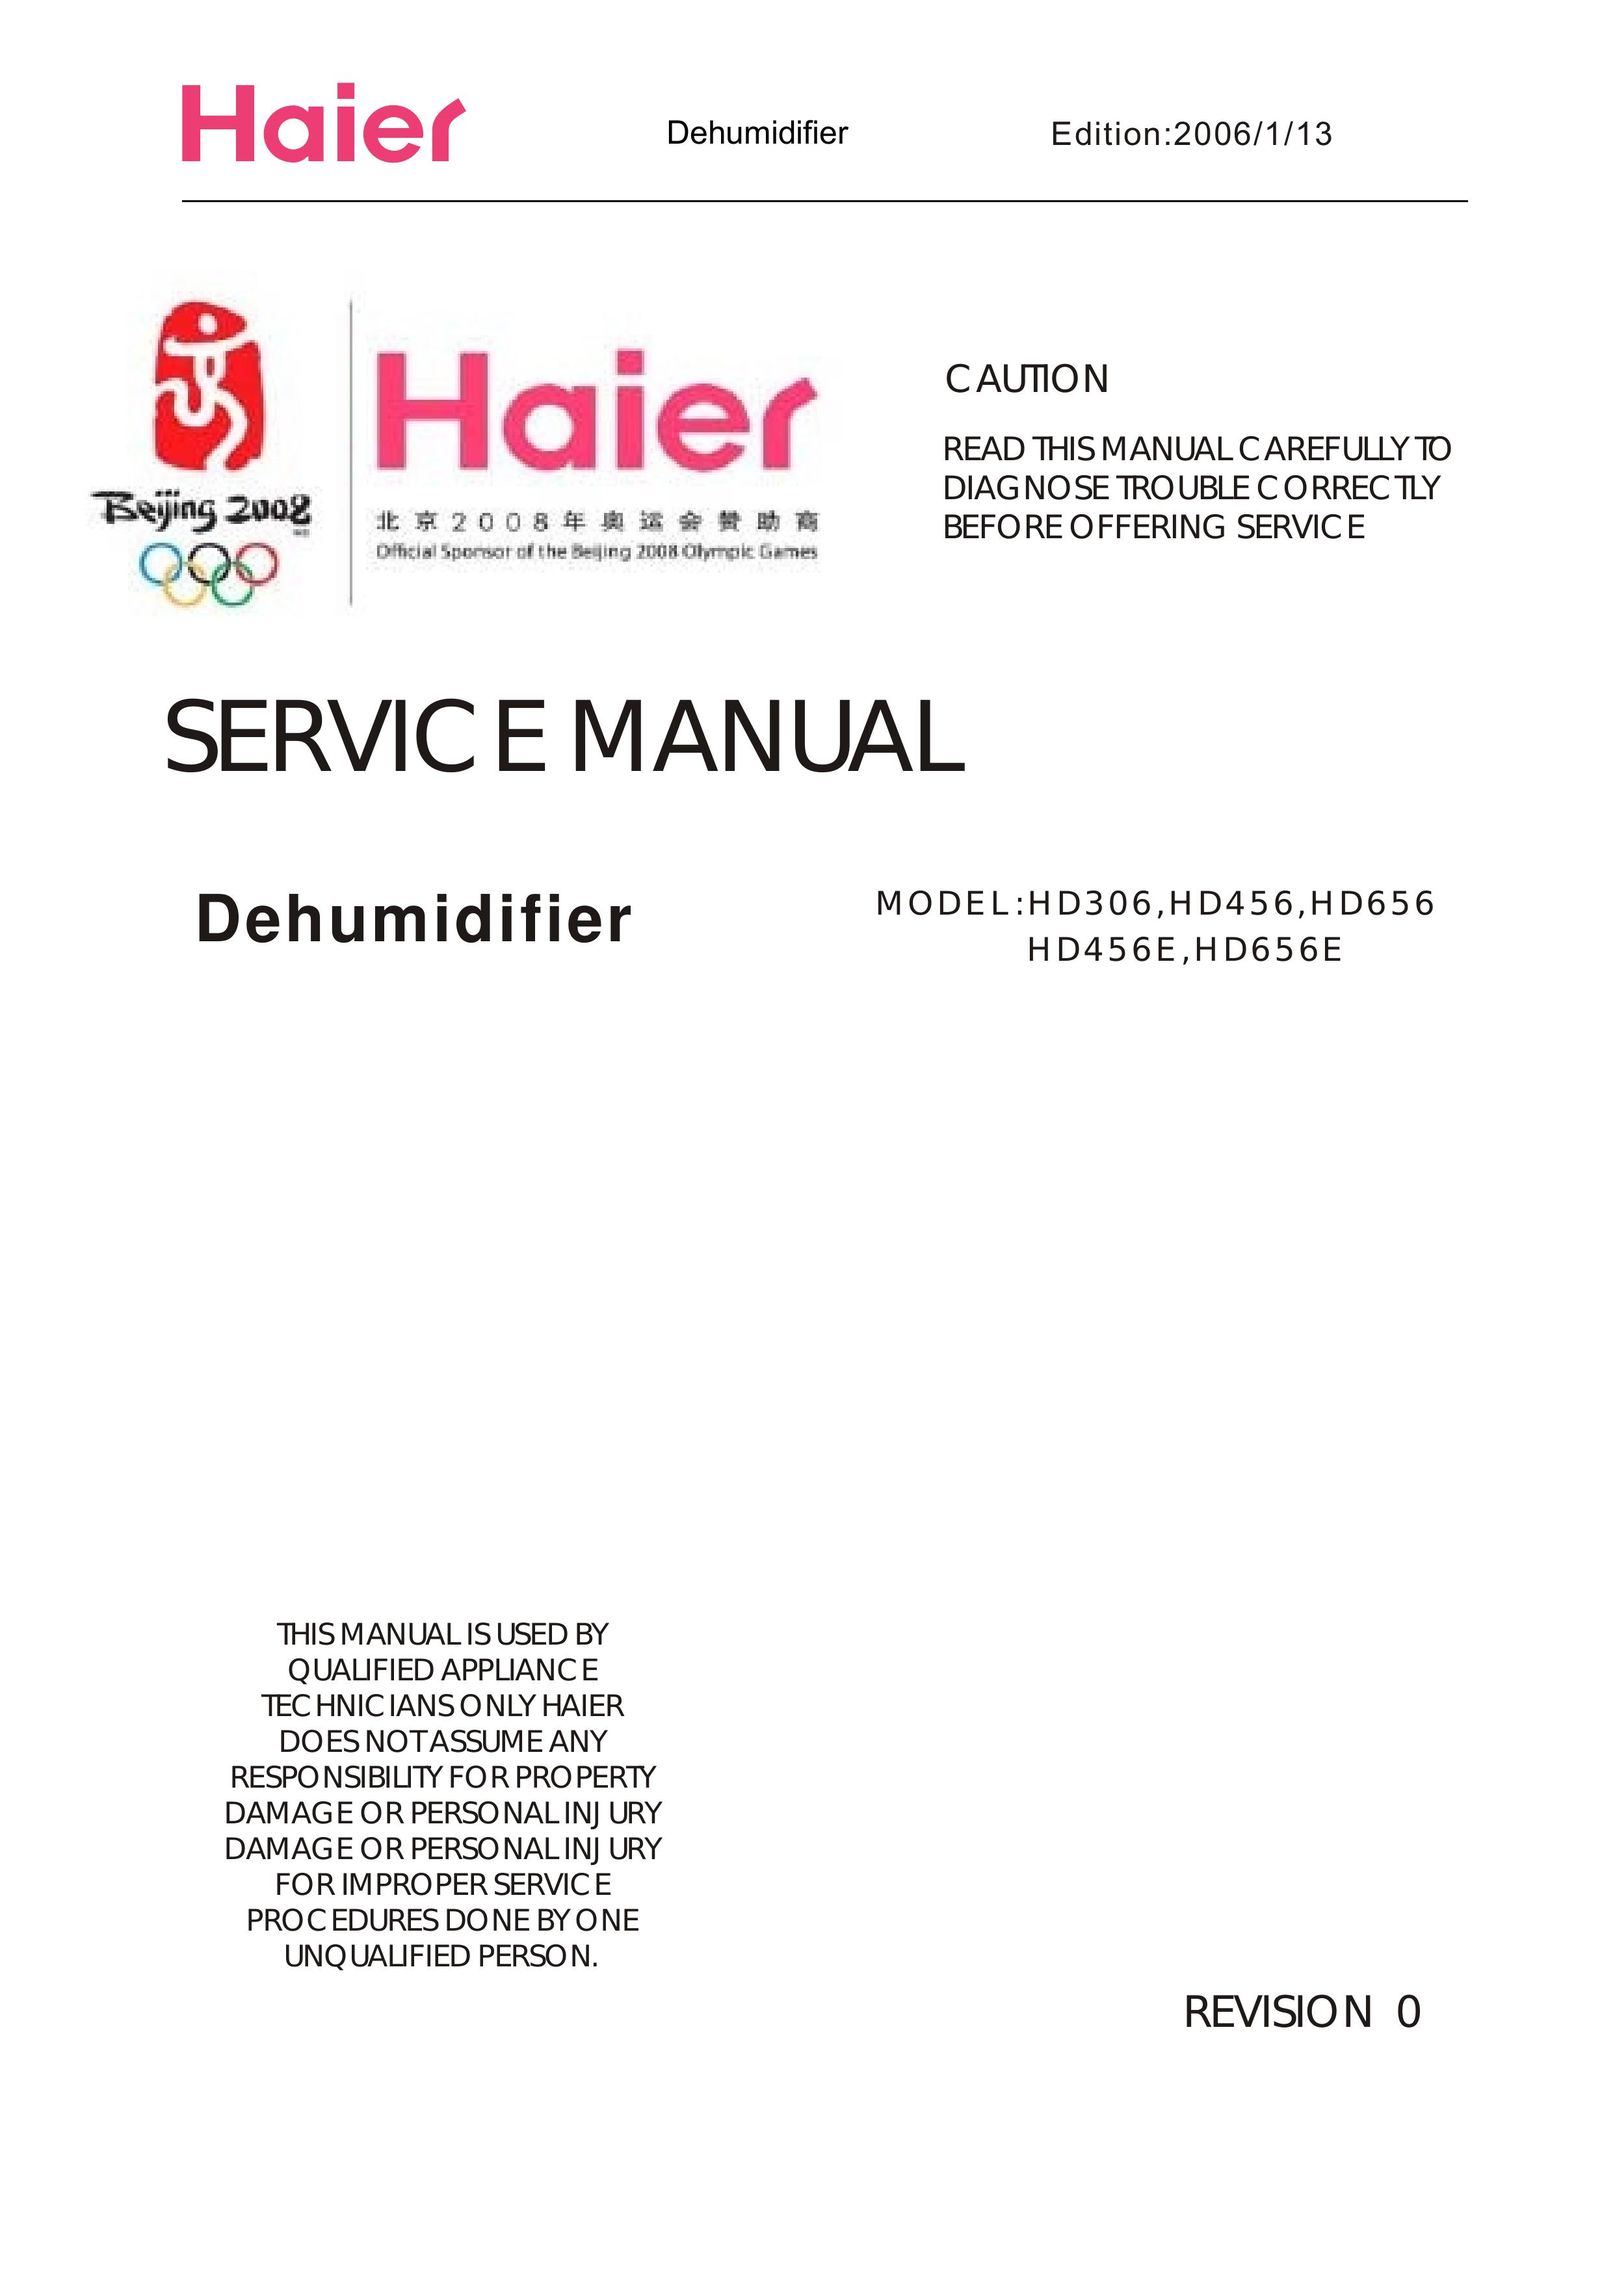 Haier HD656E Dehumidifier User Manual